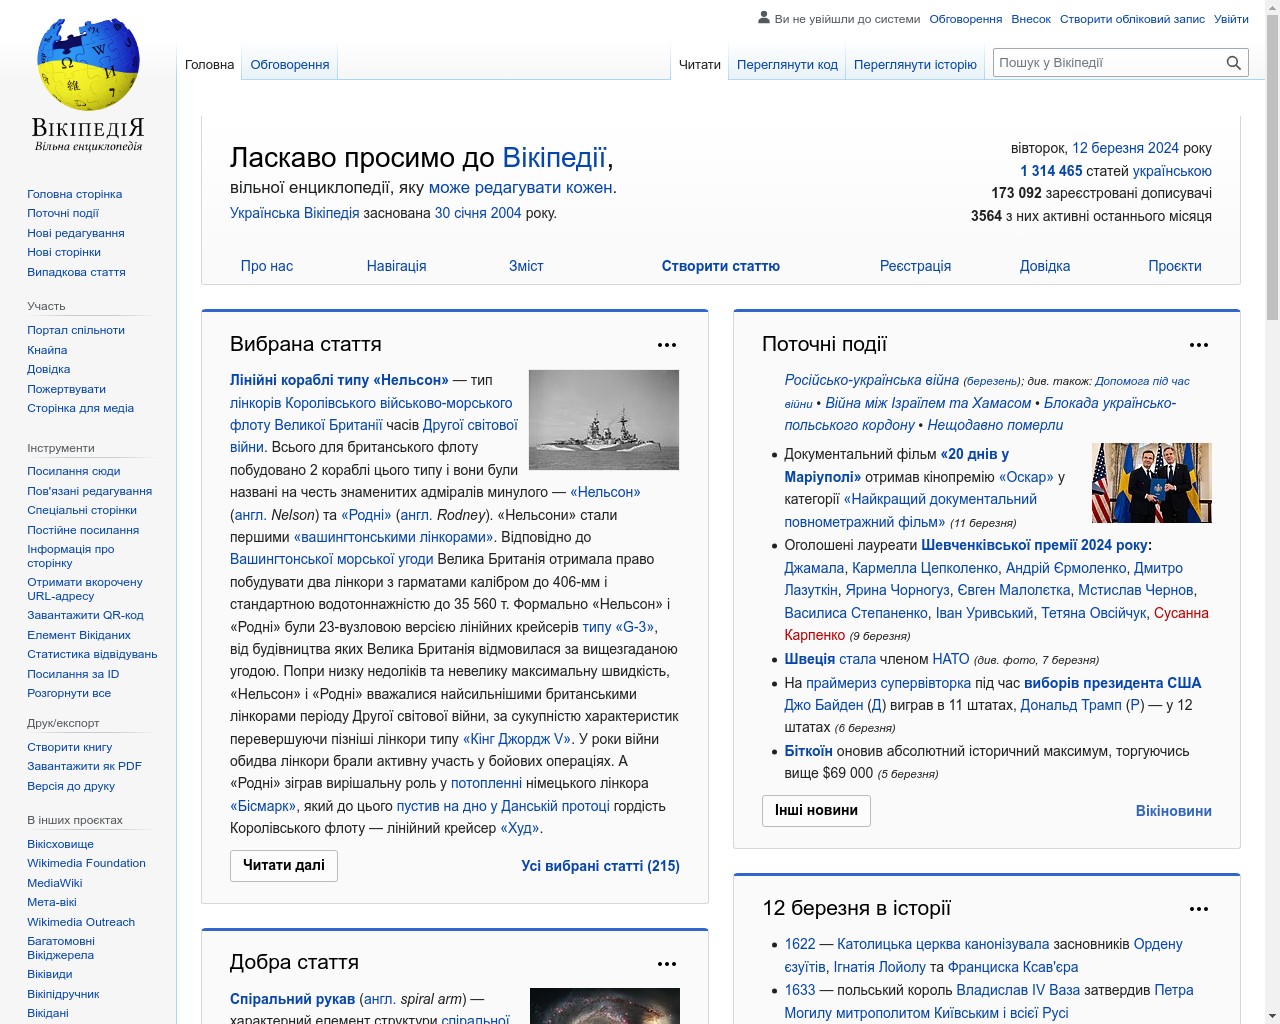 Изображение скриншота сайта - Один з найкращих сайтів, на якому можна знайти інформацію про різні теми - це Wikipedia